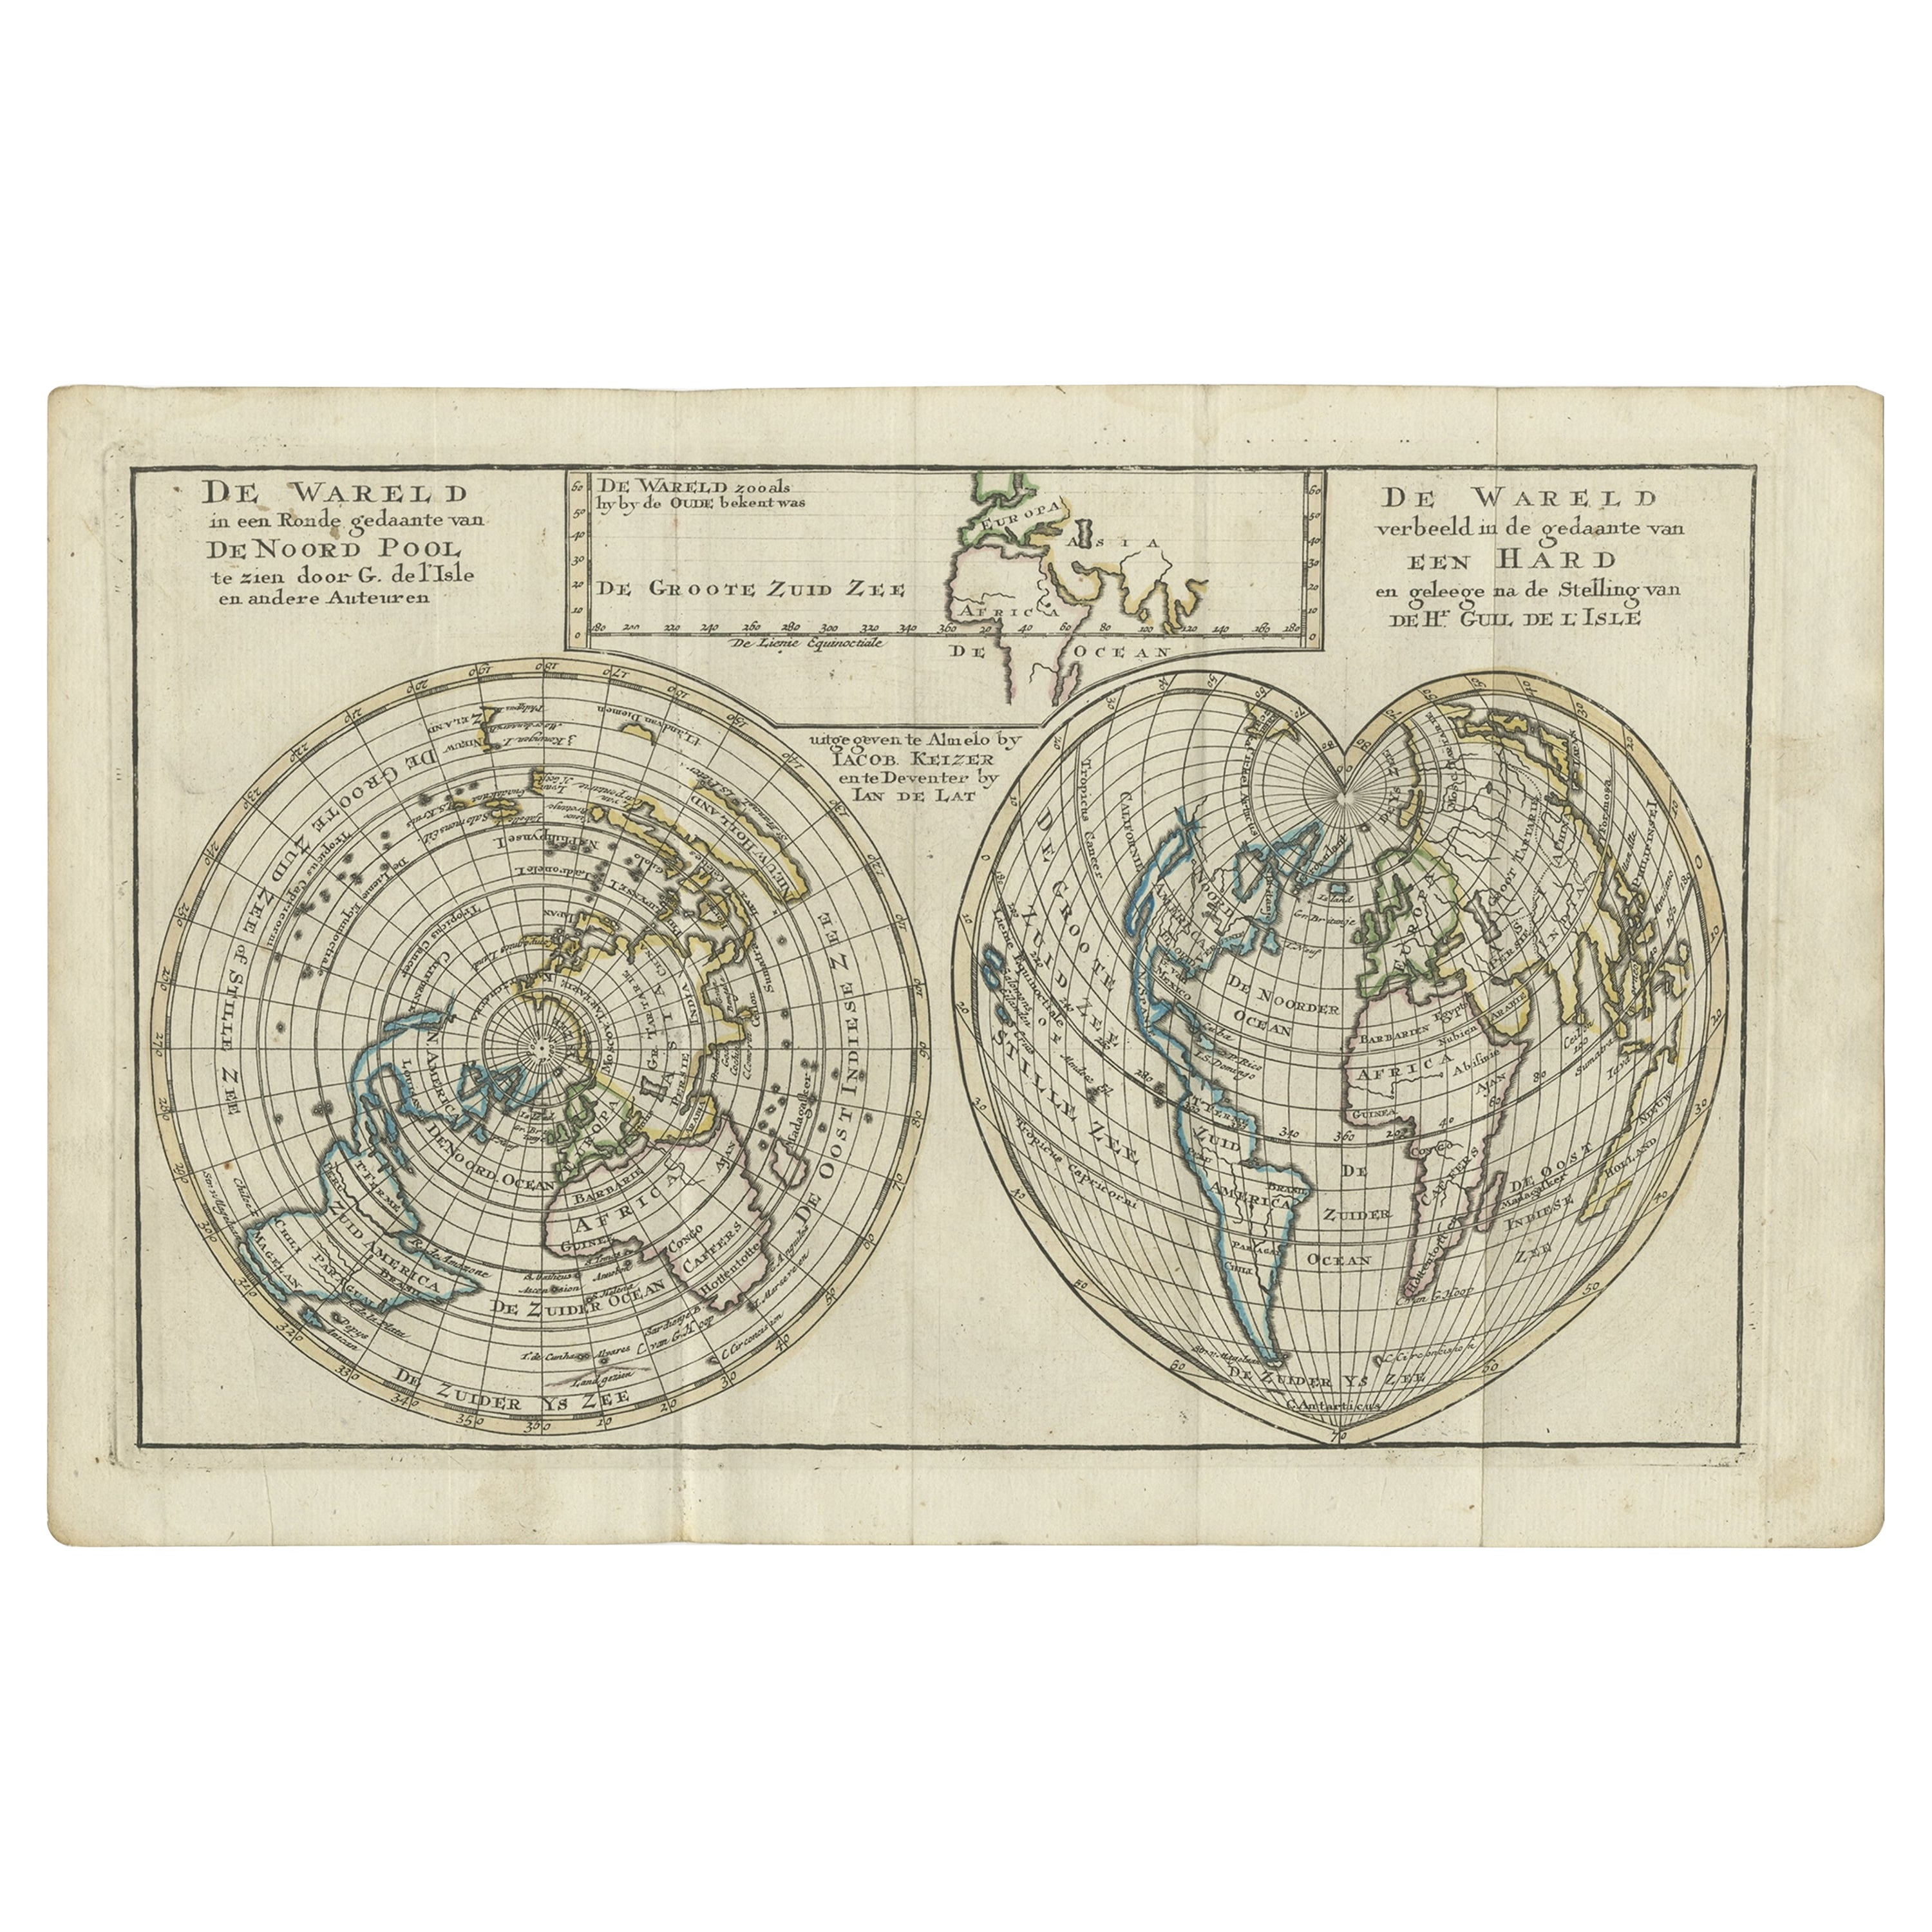 Carte ancienne du monde avec la Californie en tant qu'île, 1788<unk>